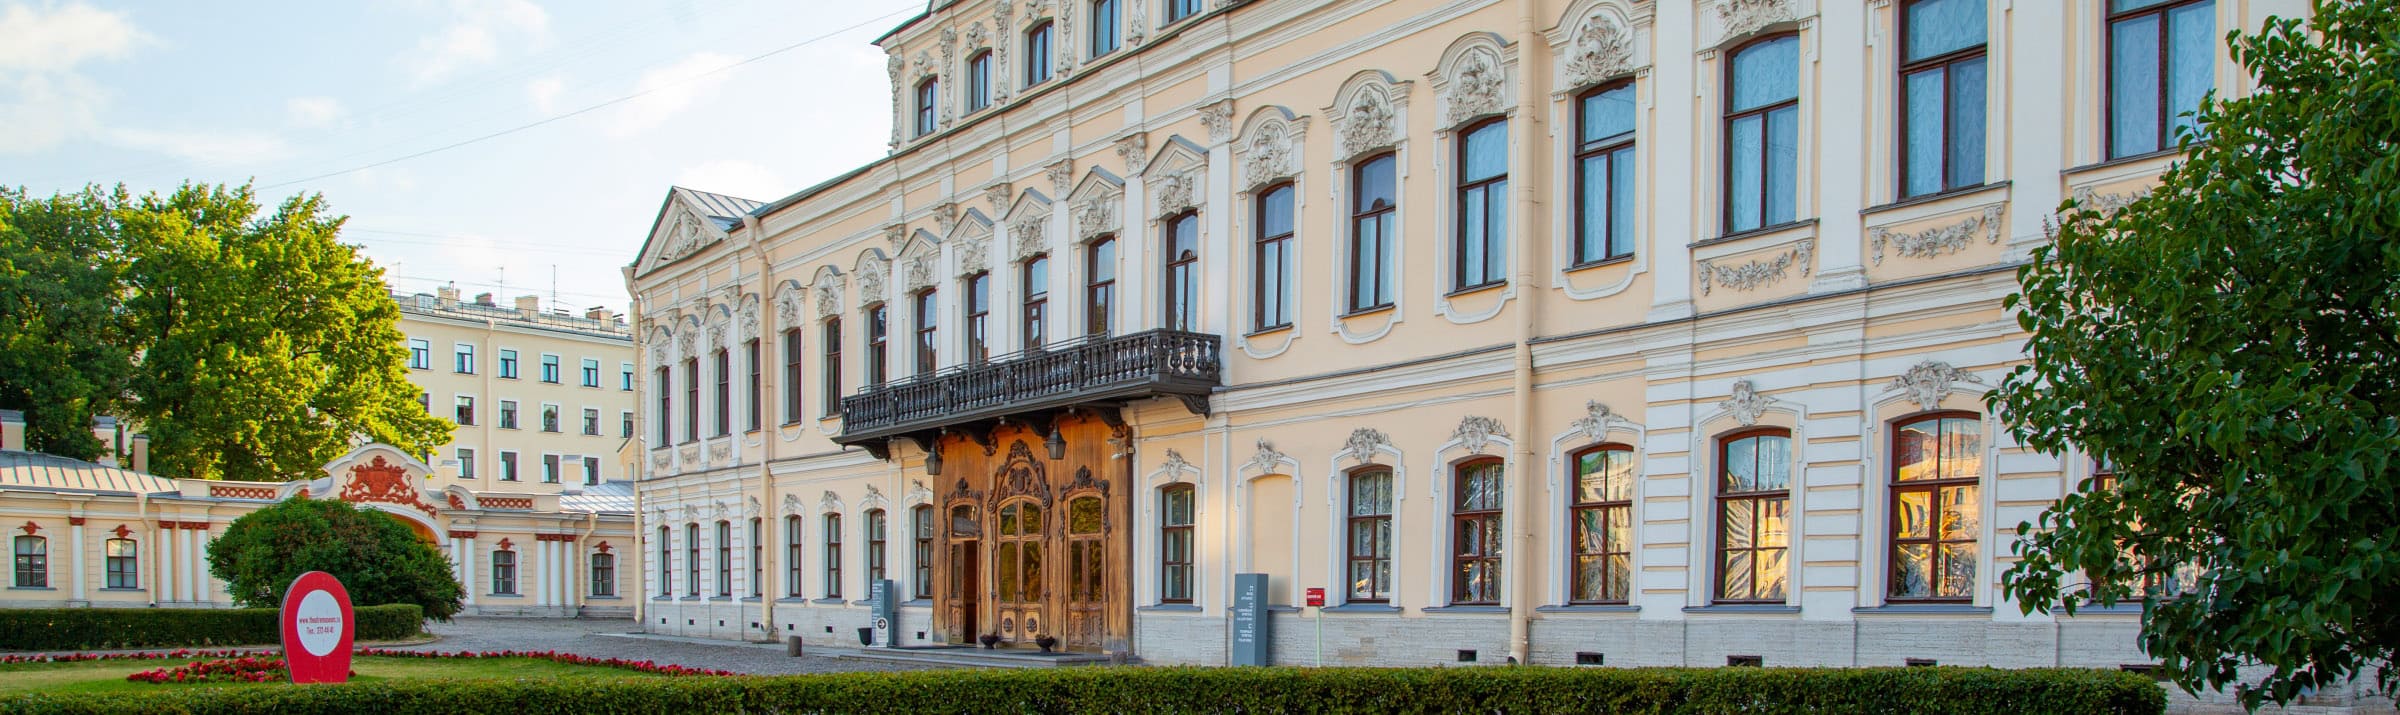 Достопримечательность Шереметевский дворец в Санкт-Петербурге